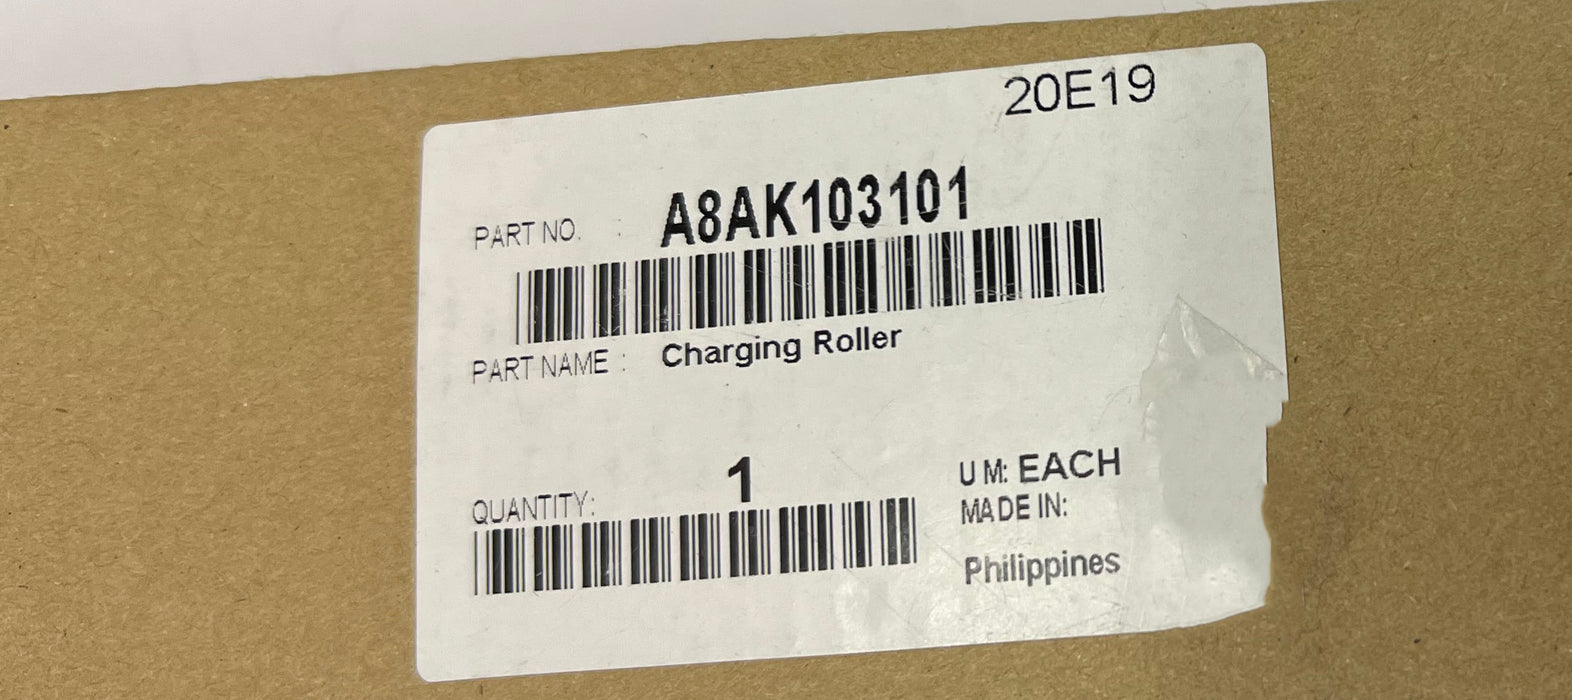 Konica Minolta Charging Roller | A8AK103101